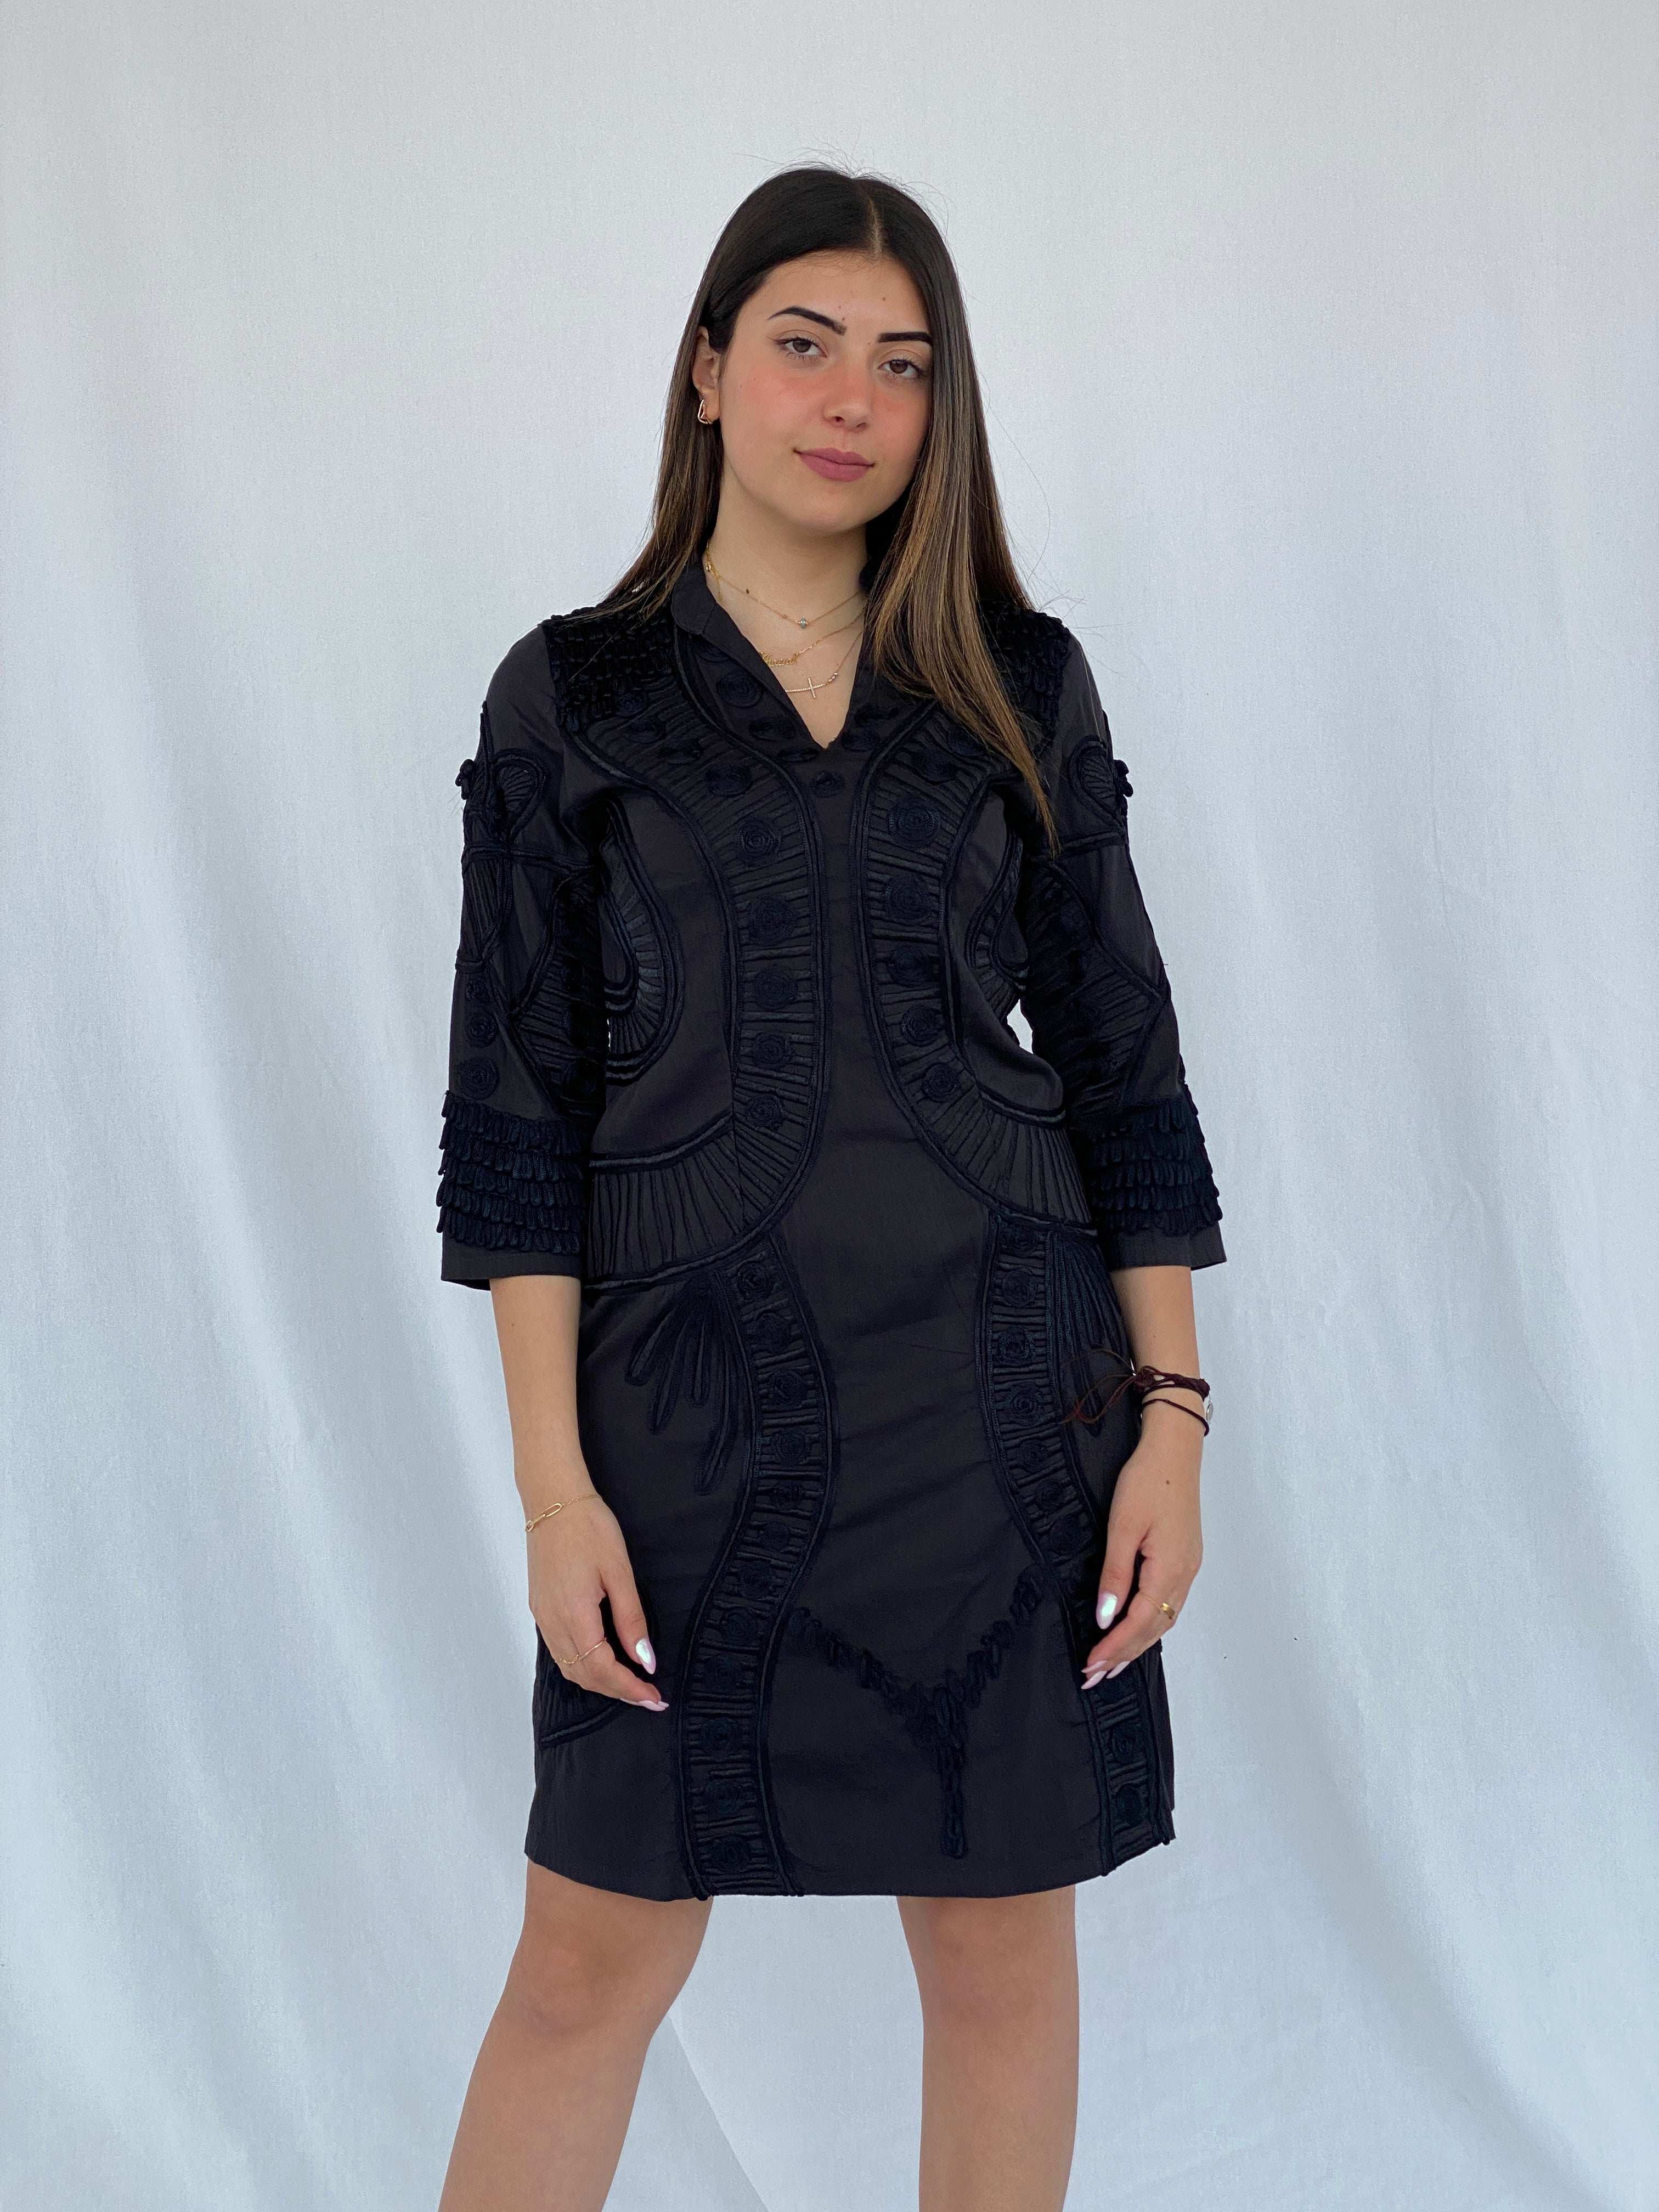 Vintage Niza Moda Bohemian 3/4 Sleeve Black Midi Dress Size M - Balagan Vintage Midi Dress 90s, black dress, dress, Juana, midi dress, NEW IN